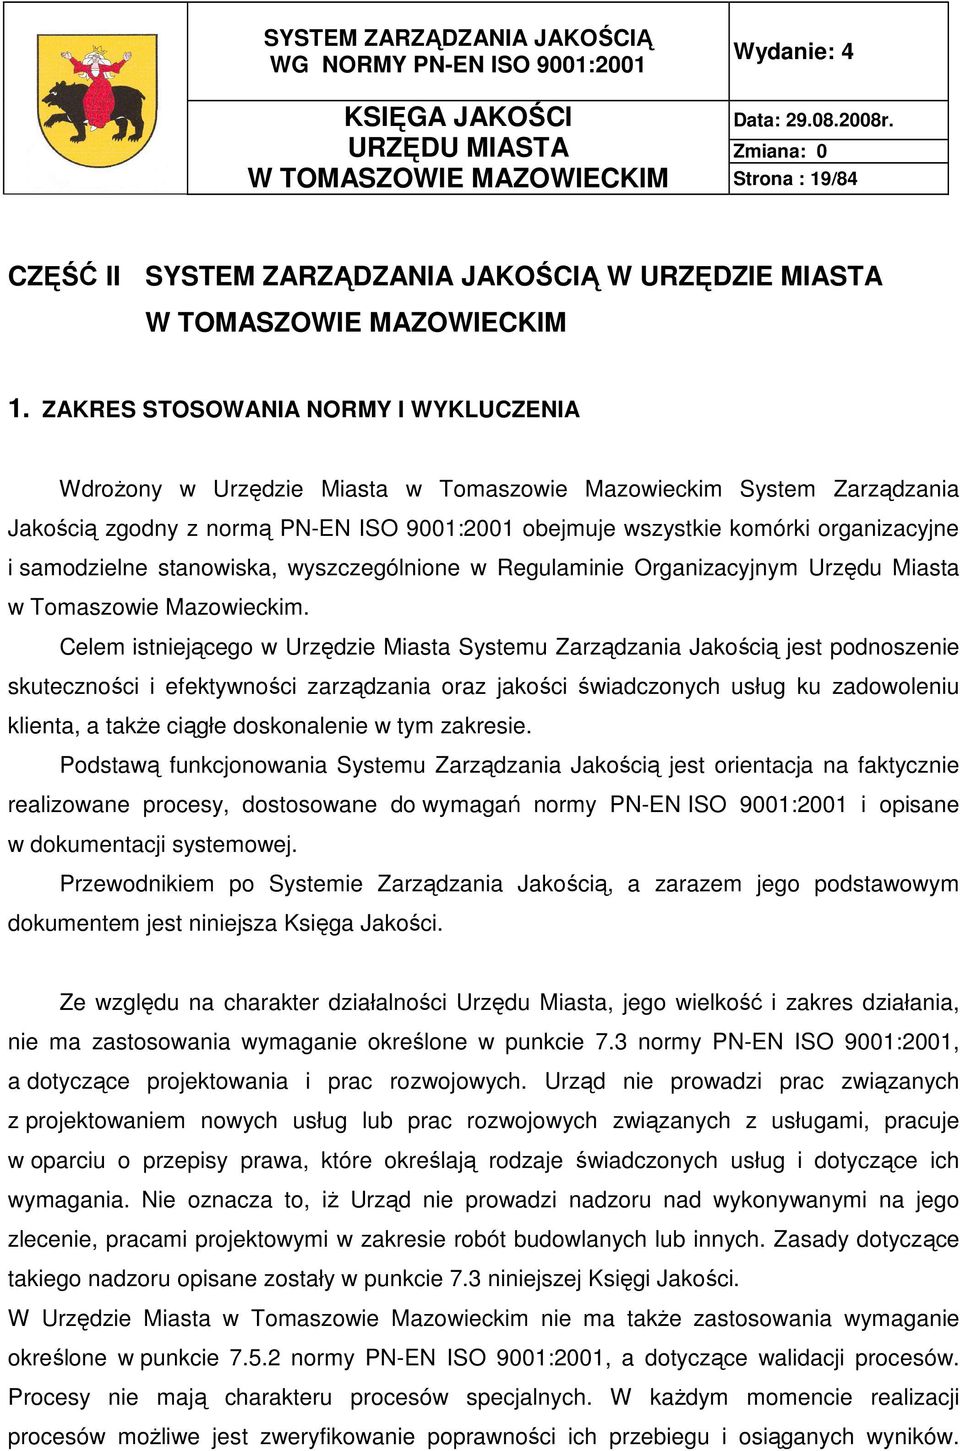 samodzielne stanowiska, wyszczególnione w Regulaminie Organizacyjnym Urzędu Miasta w Tomaszowie Mazowieckim.